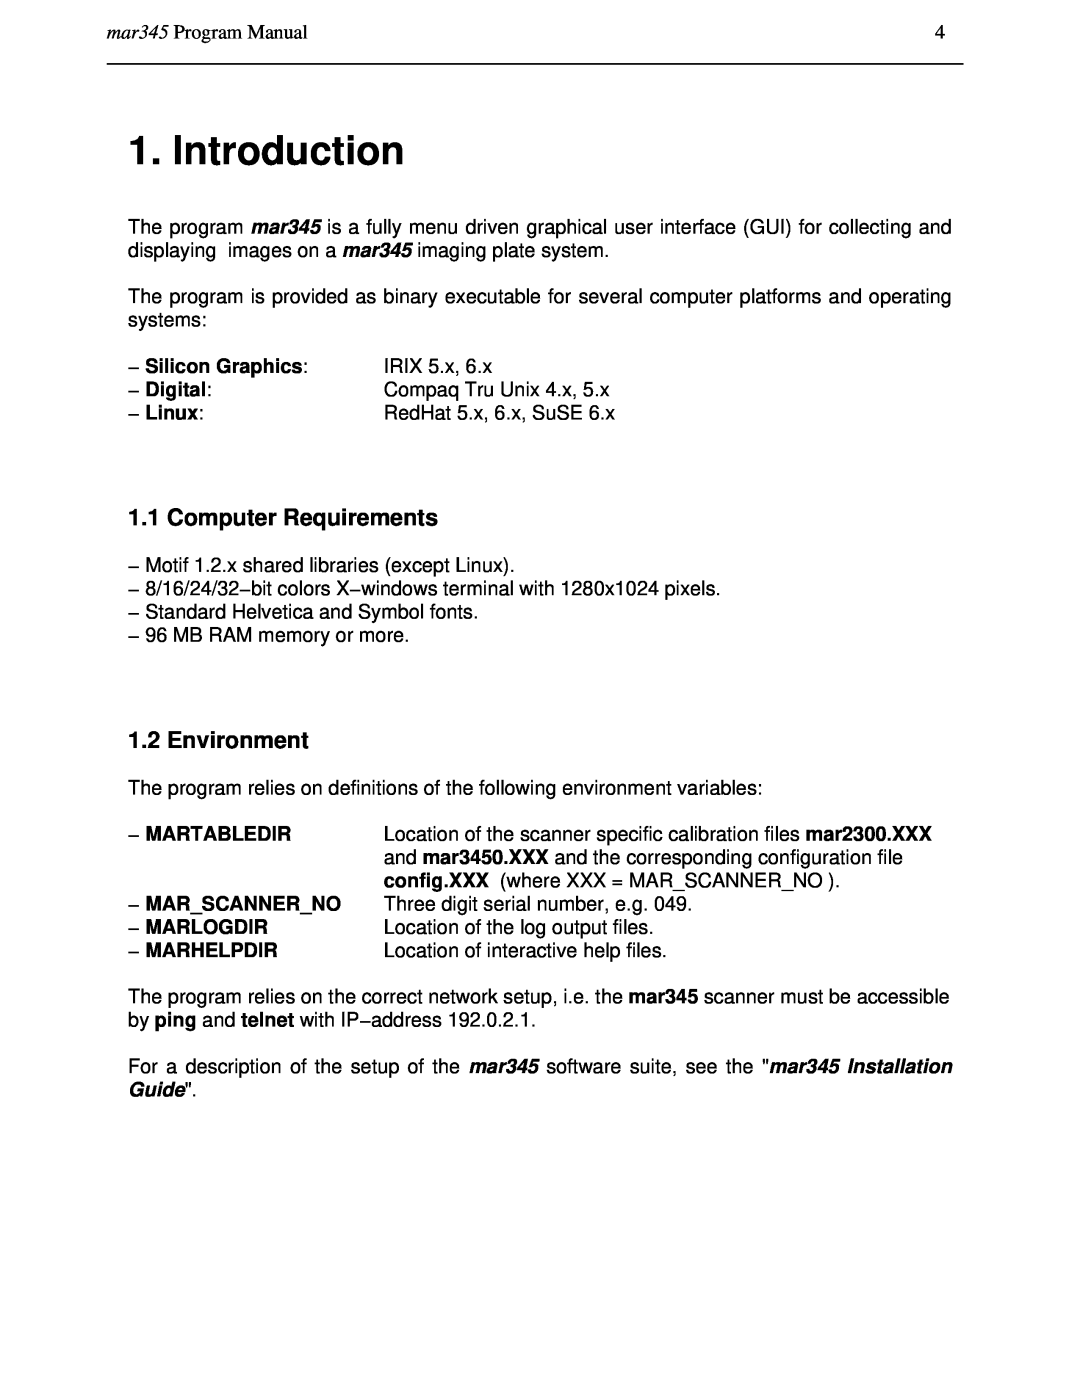 Compaq manual Introduction, Computer Requirements, Environment, mar345 Program Manual 